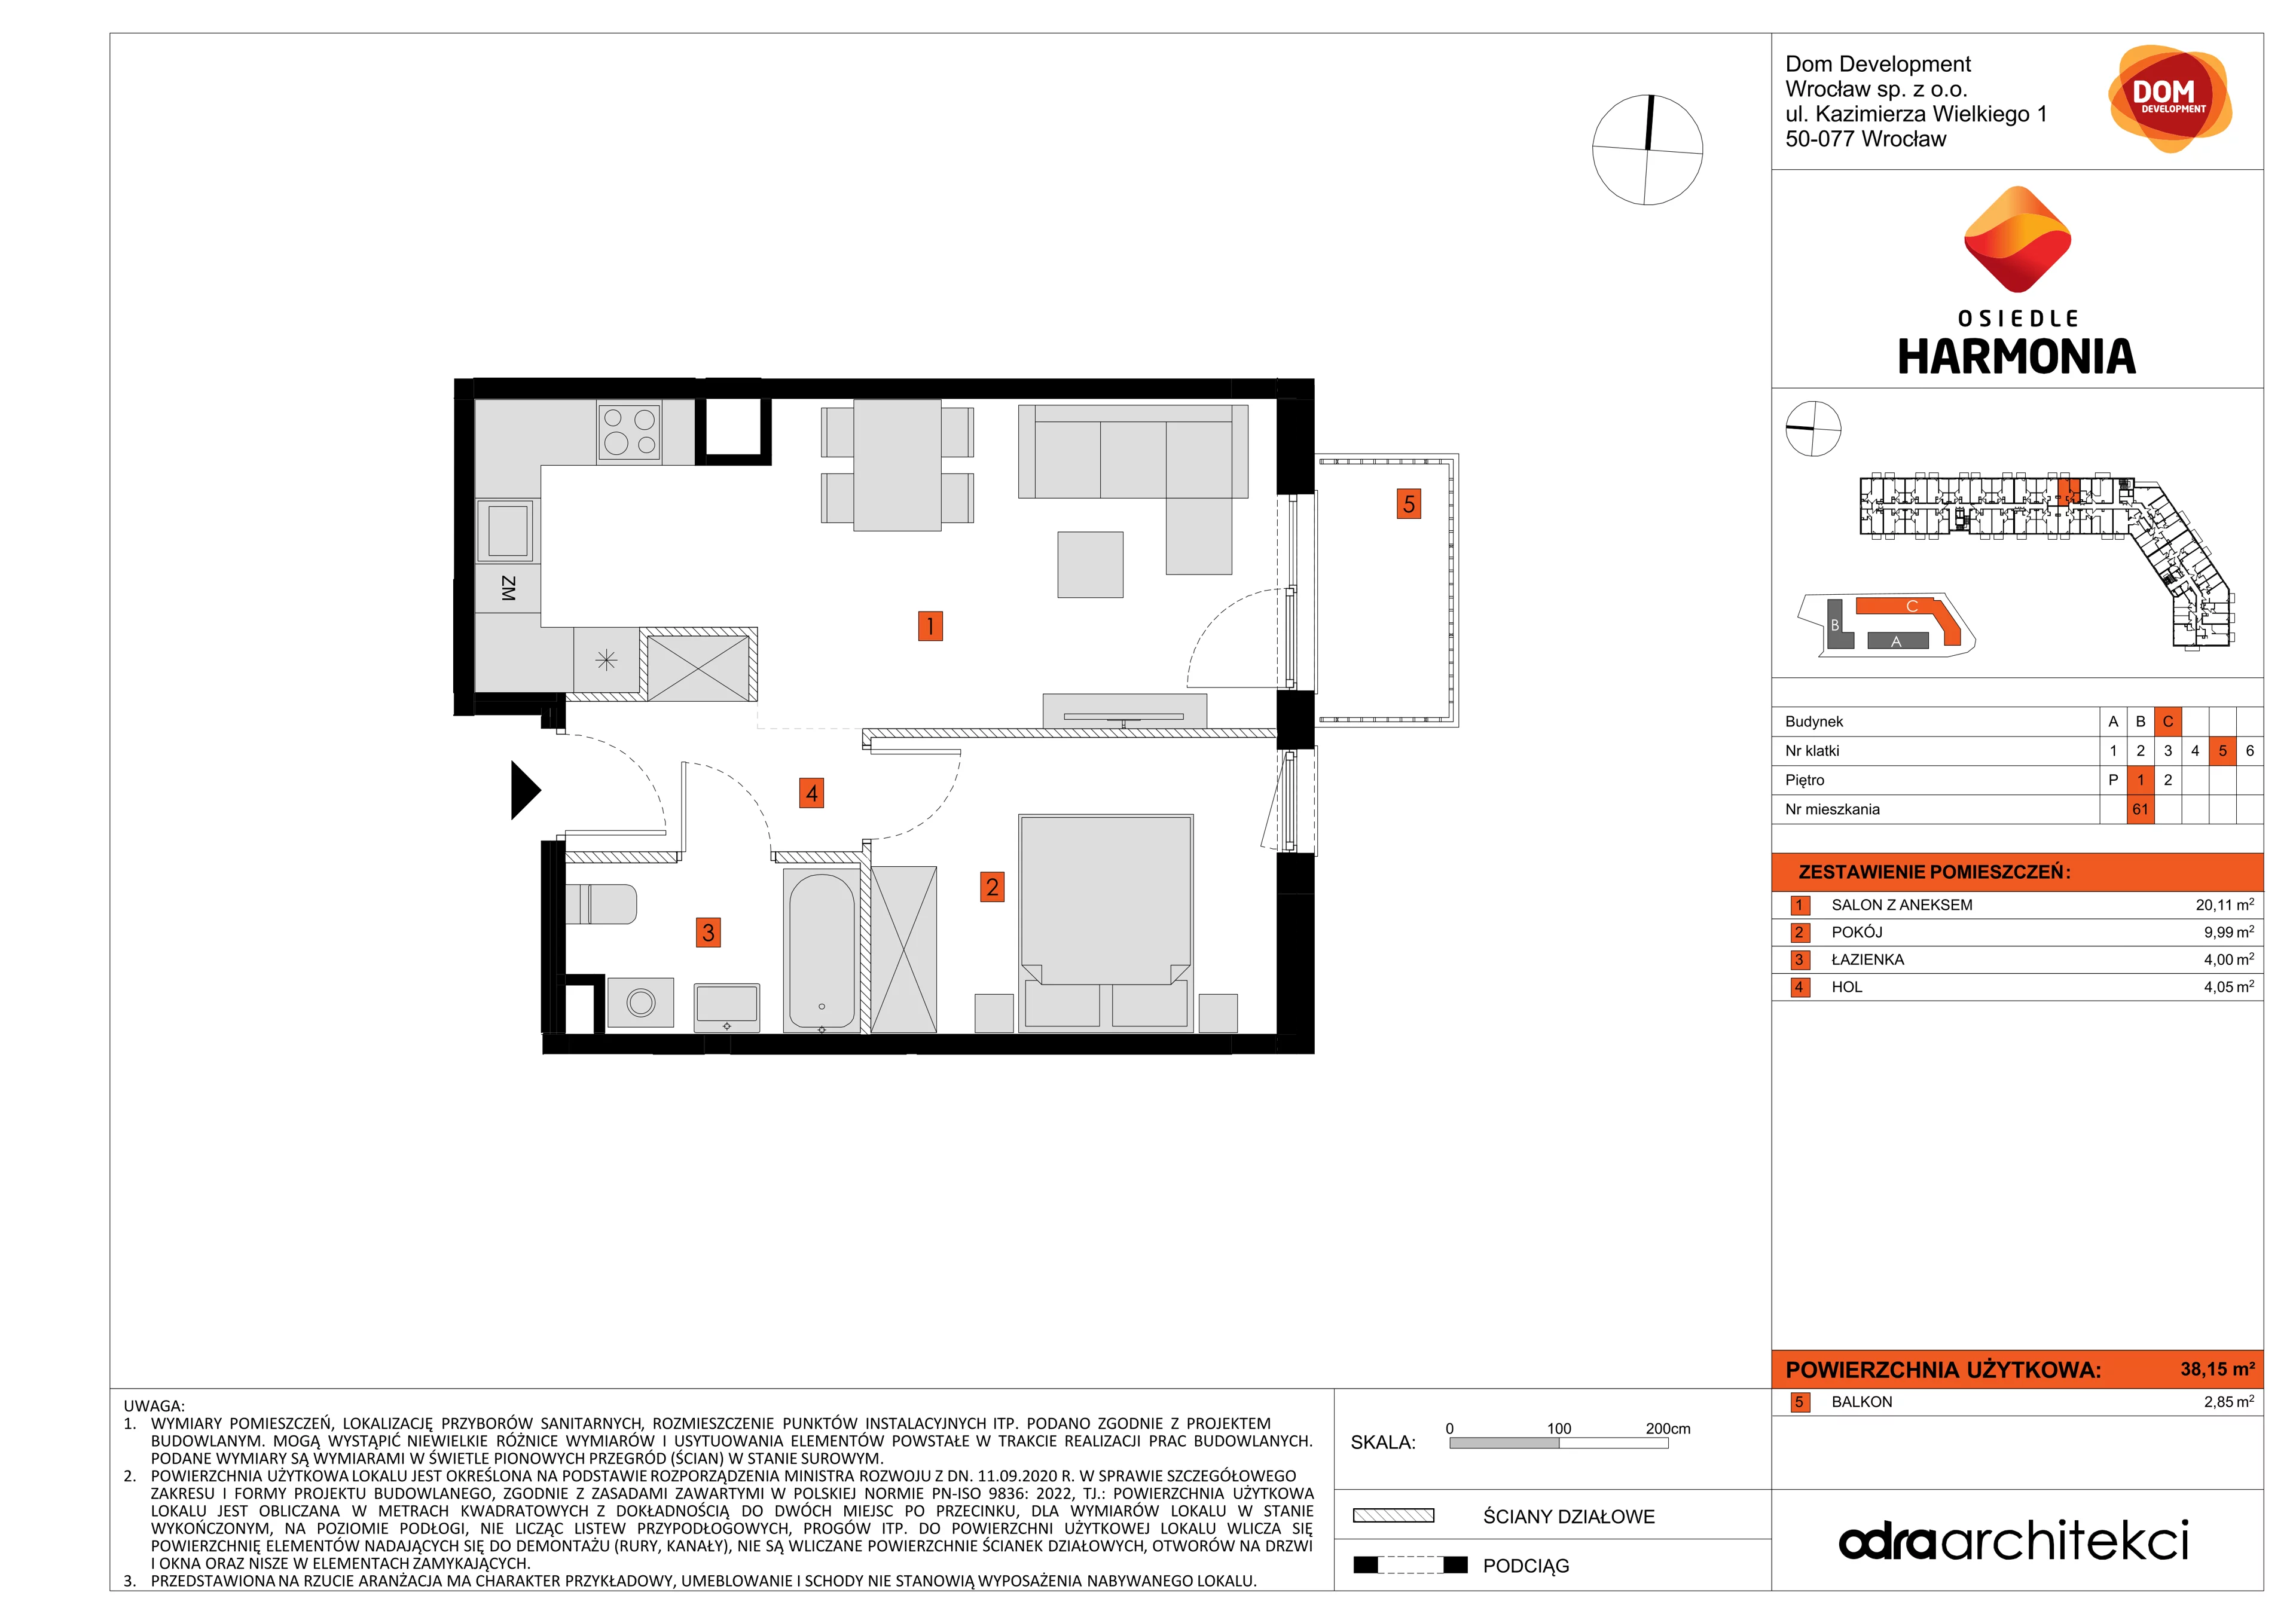 Mieszkanie 38,15 m², piętro 1, oferta nr C/61, Osiedle Harmonia, Wrocław, Maślice, ul. Stodolna